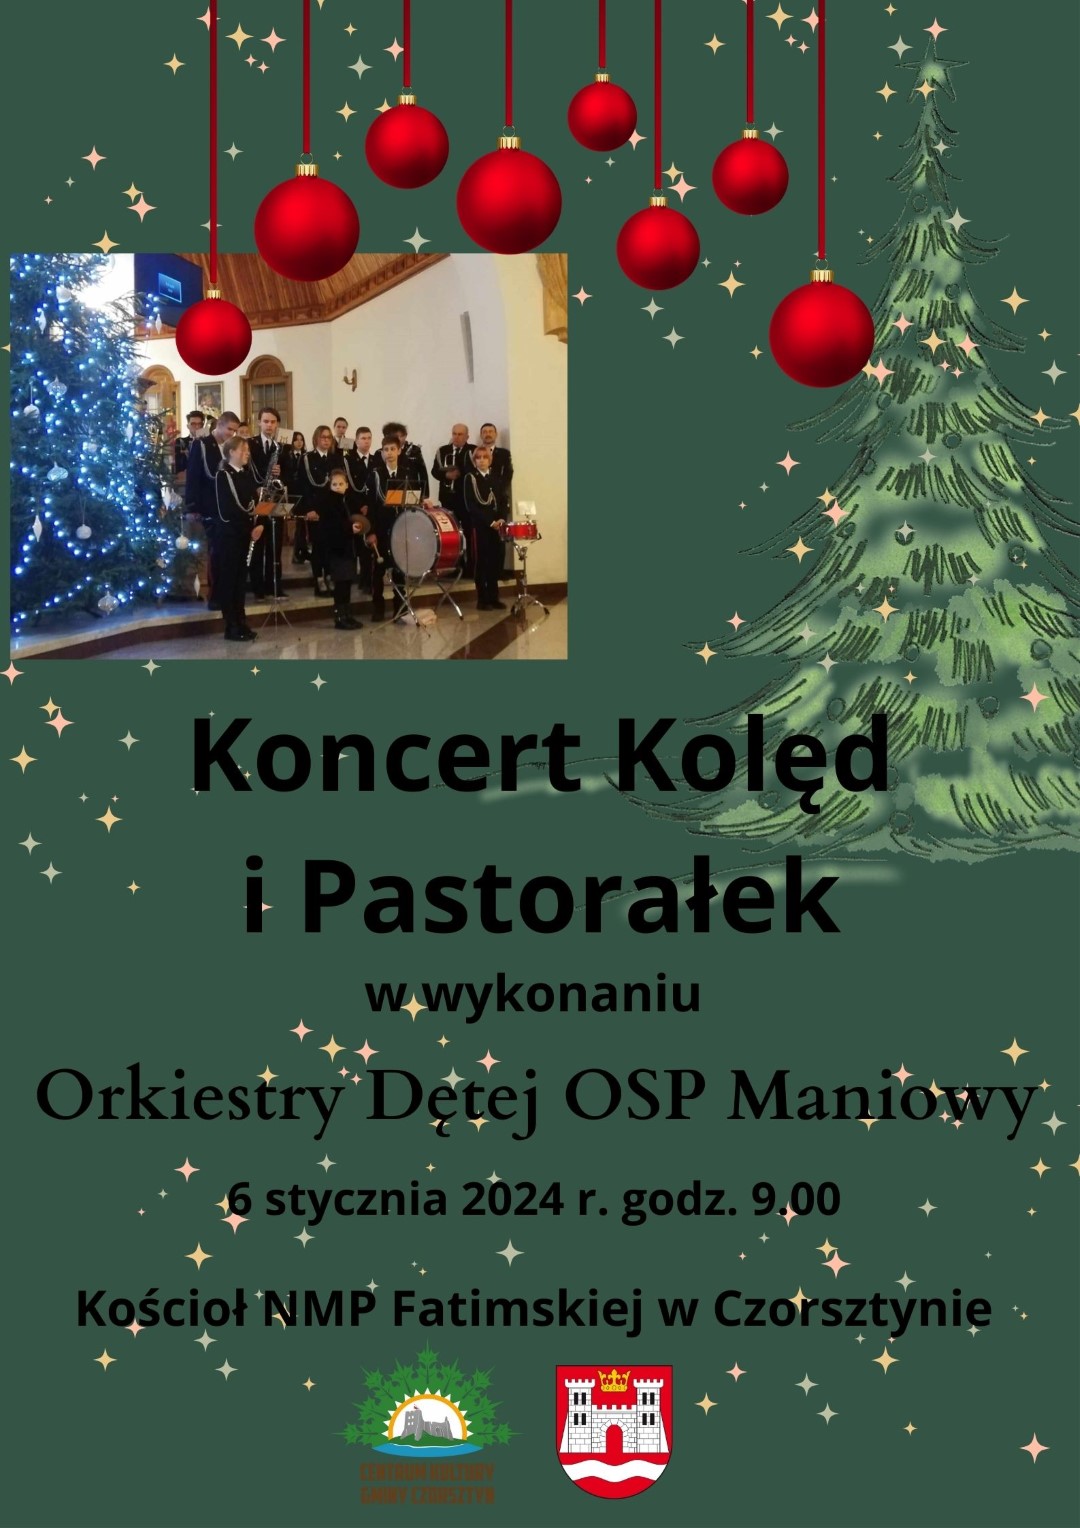 Orkiestra Dęta OSP Maniowy z kolędą